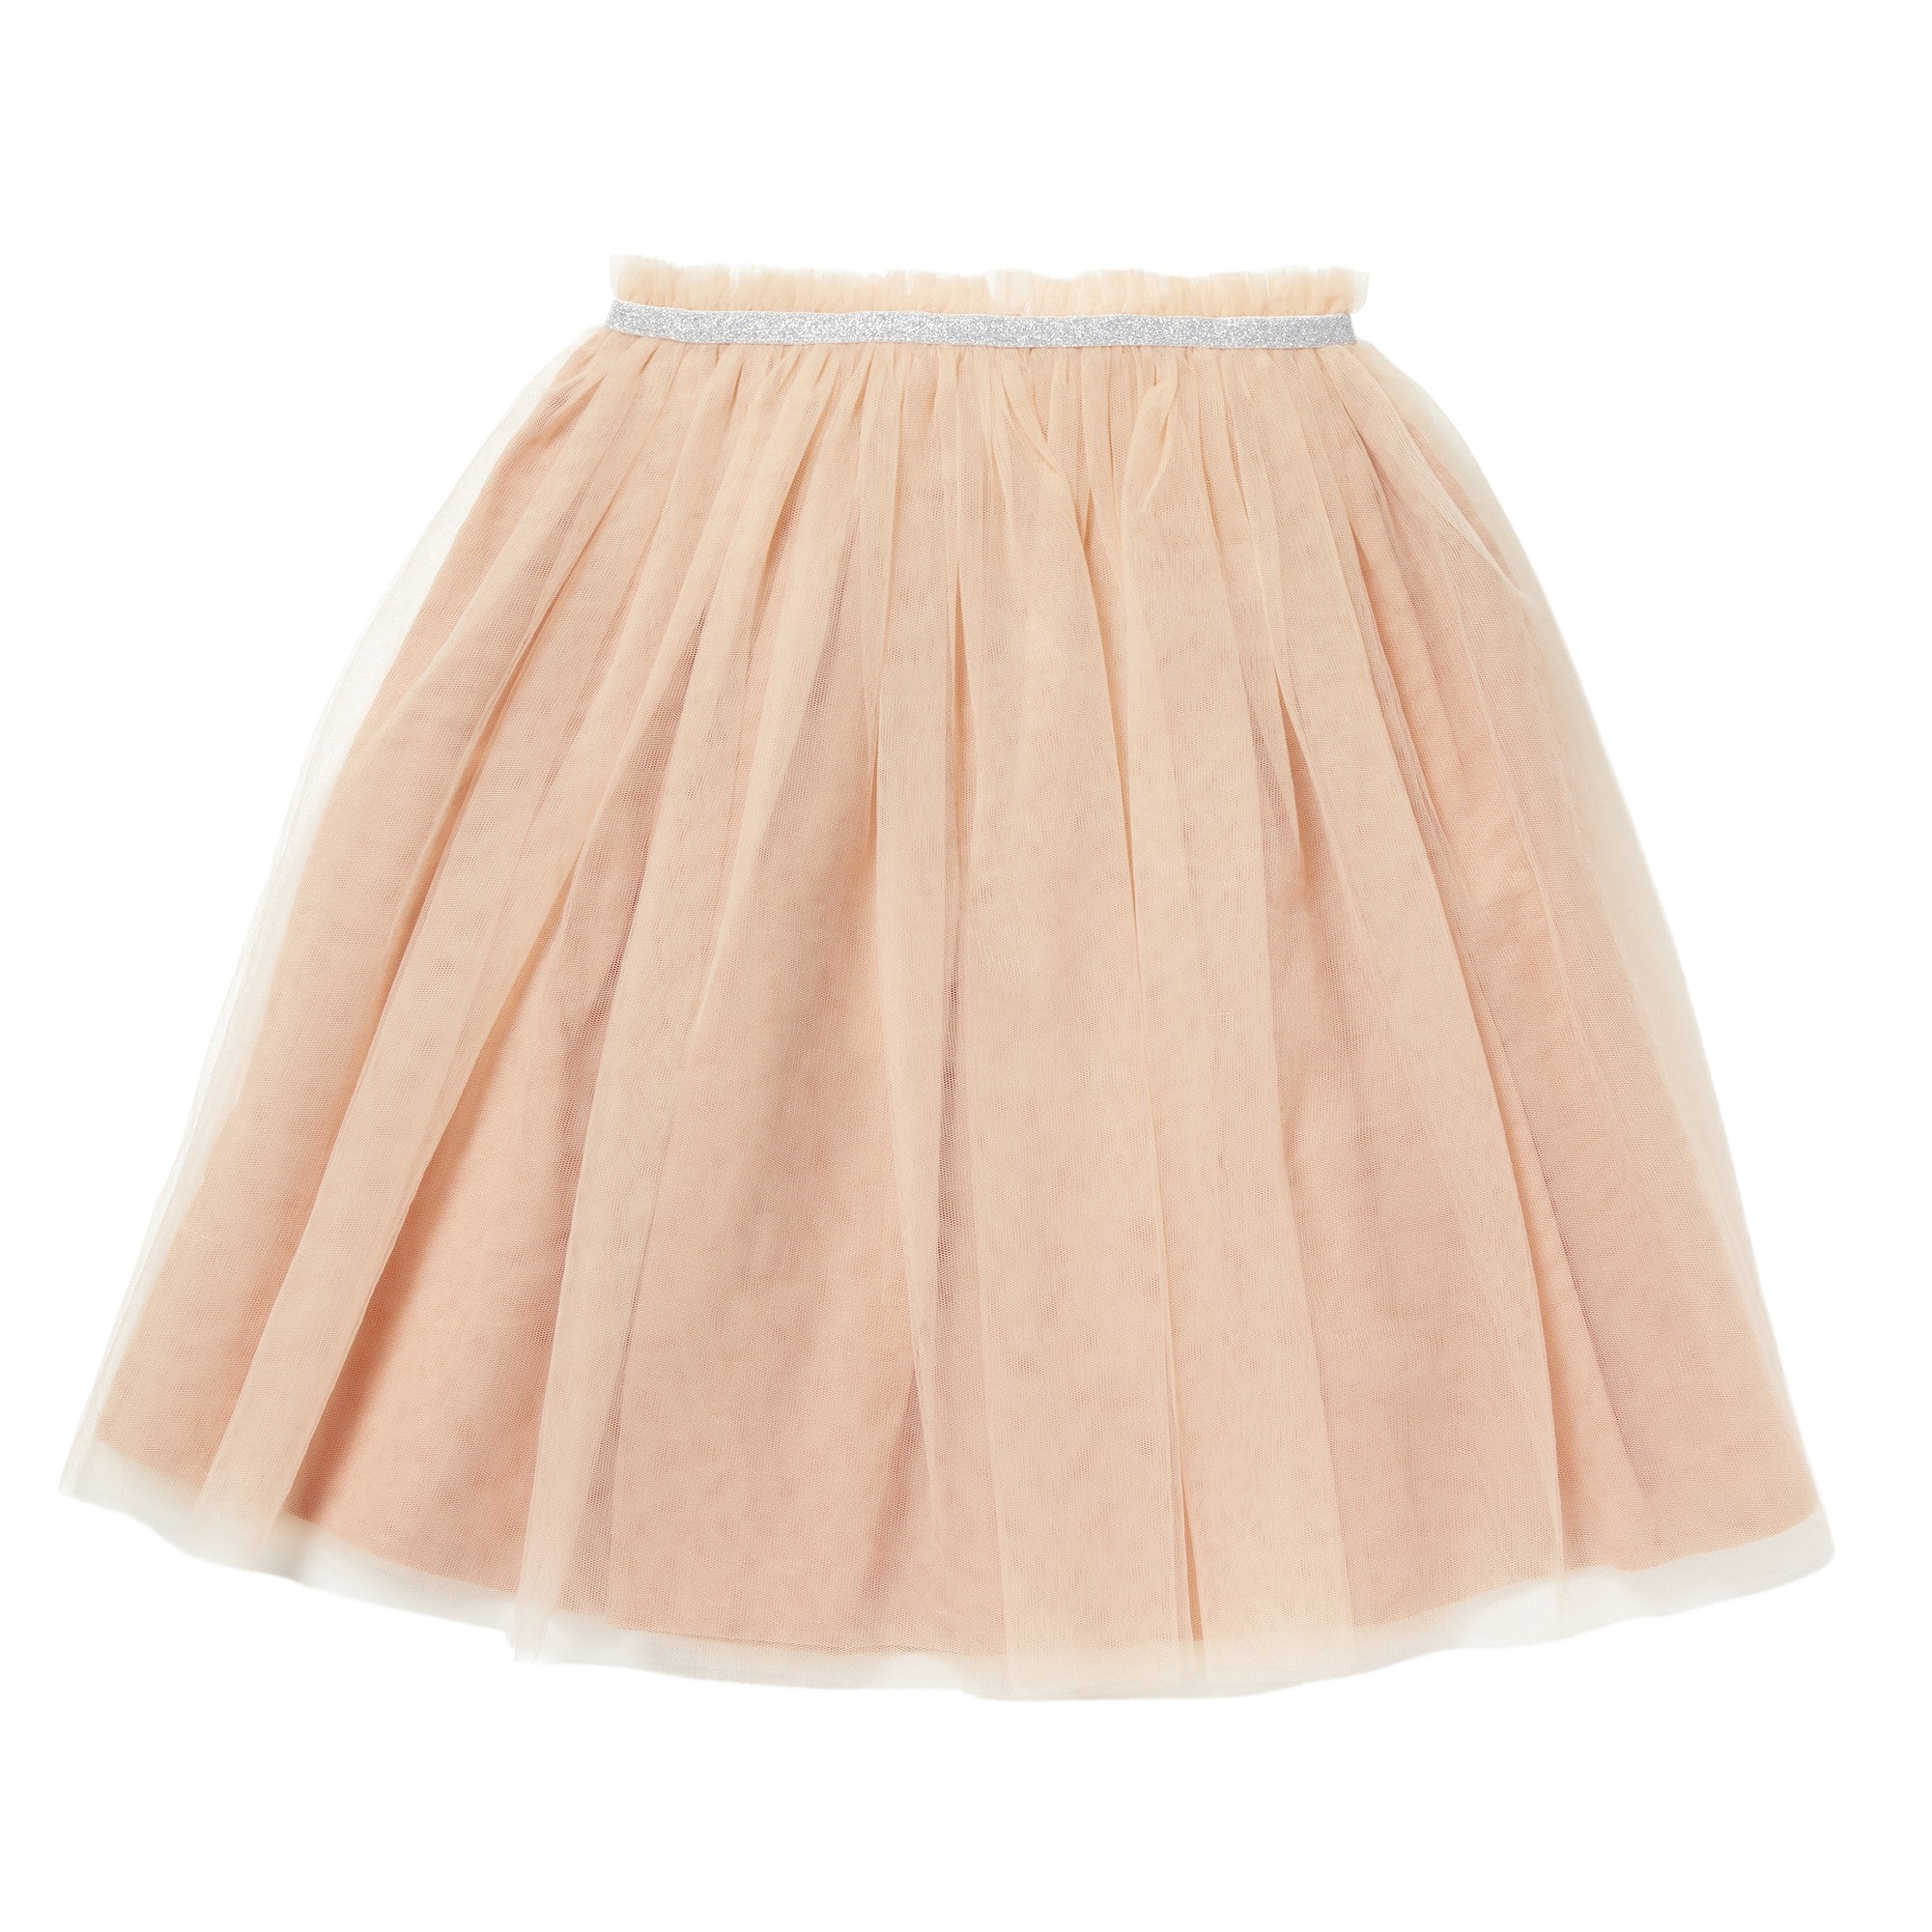 Tutu skirt - Powder pink